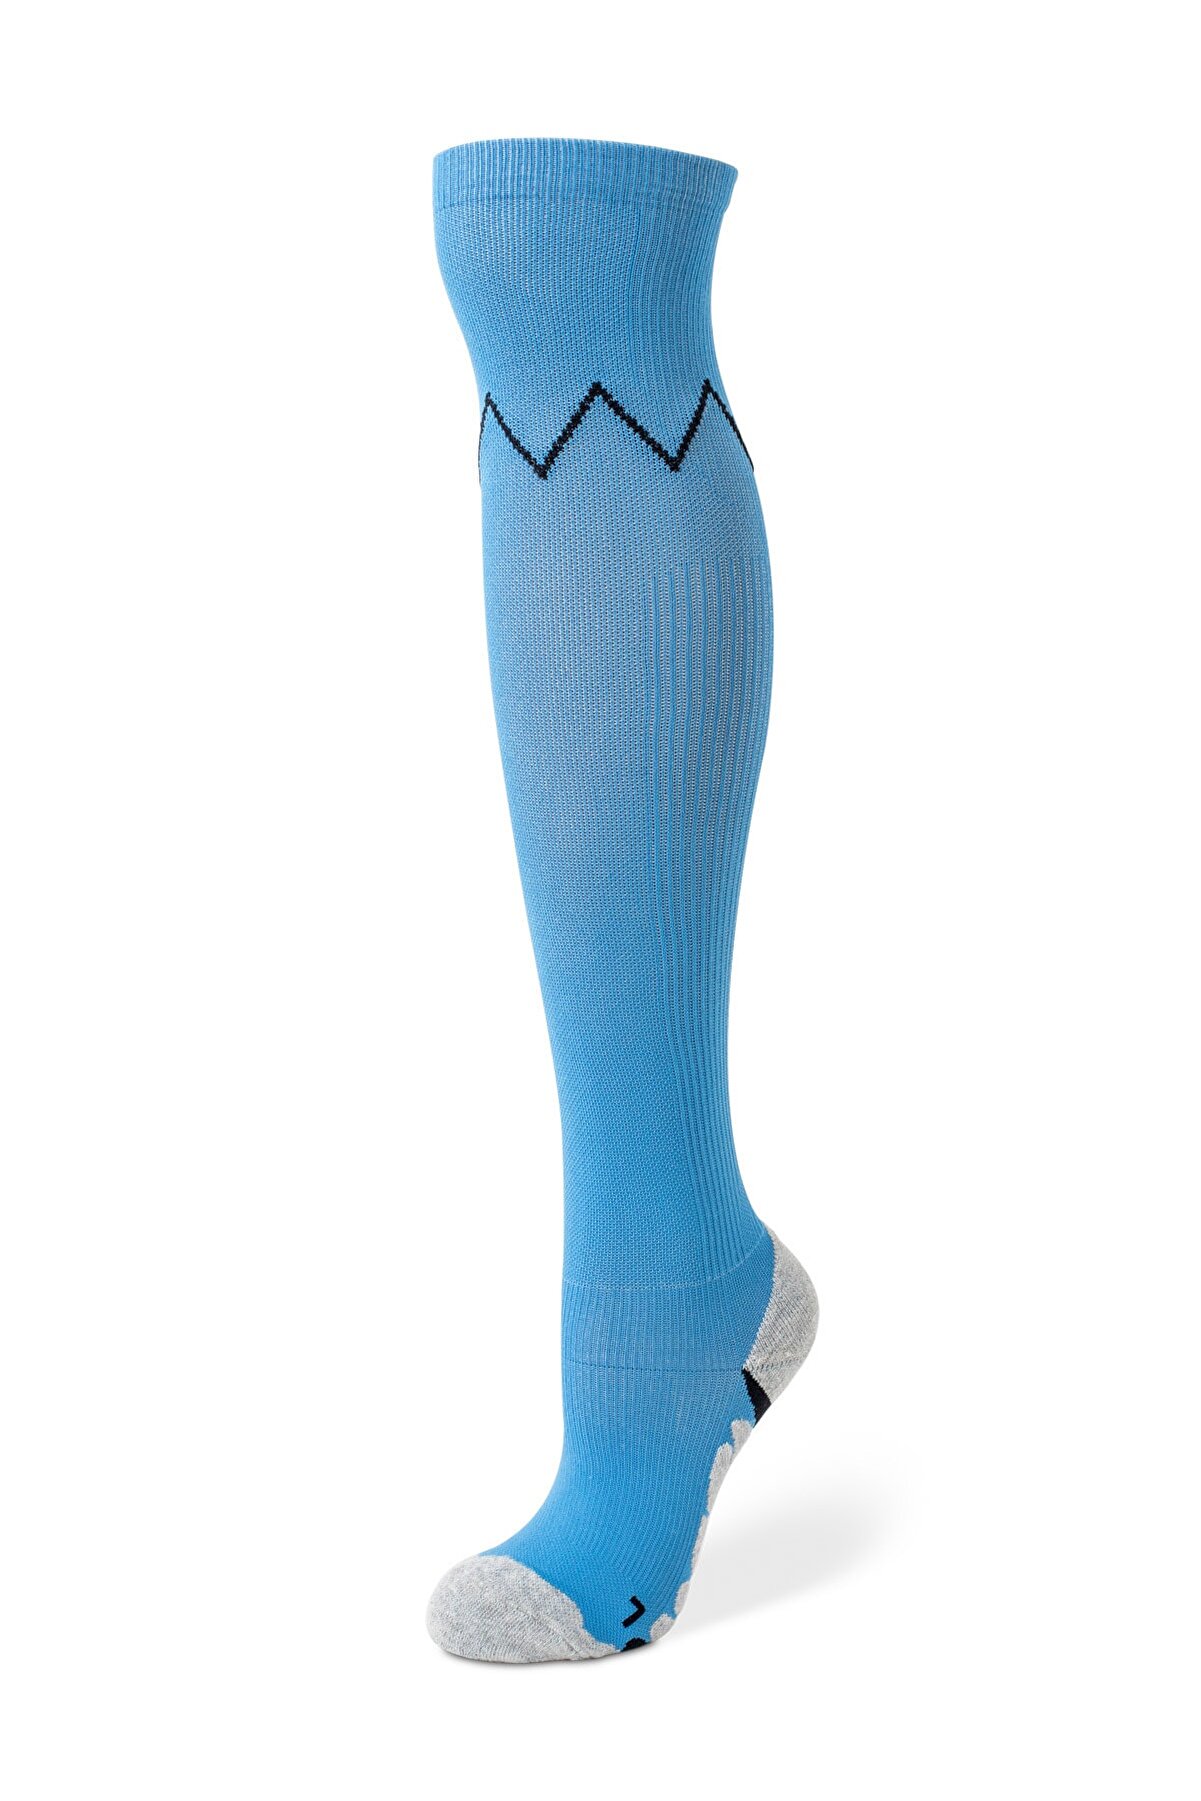 VİE ENDURANCE Unisex Mavi Kompresyon Basınçlı Destek Çorabı